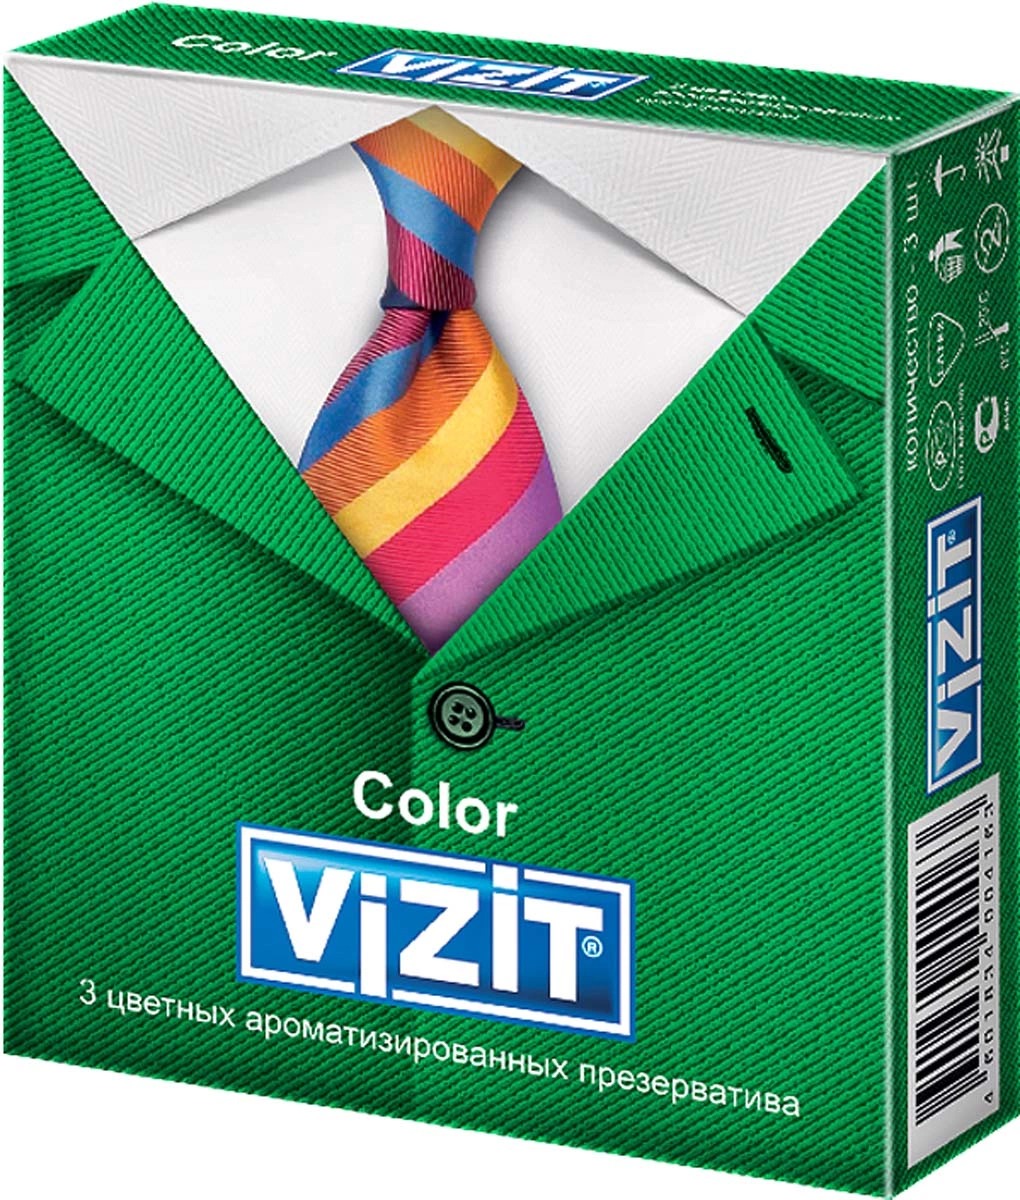 Презерватив Vizit Overture (ароматиз./цветные) №3 арт.1101, Кондоми  - купить со скидкой